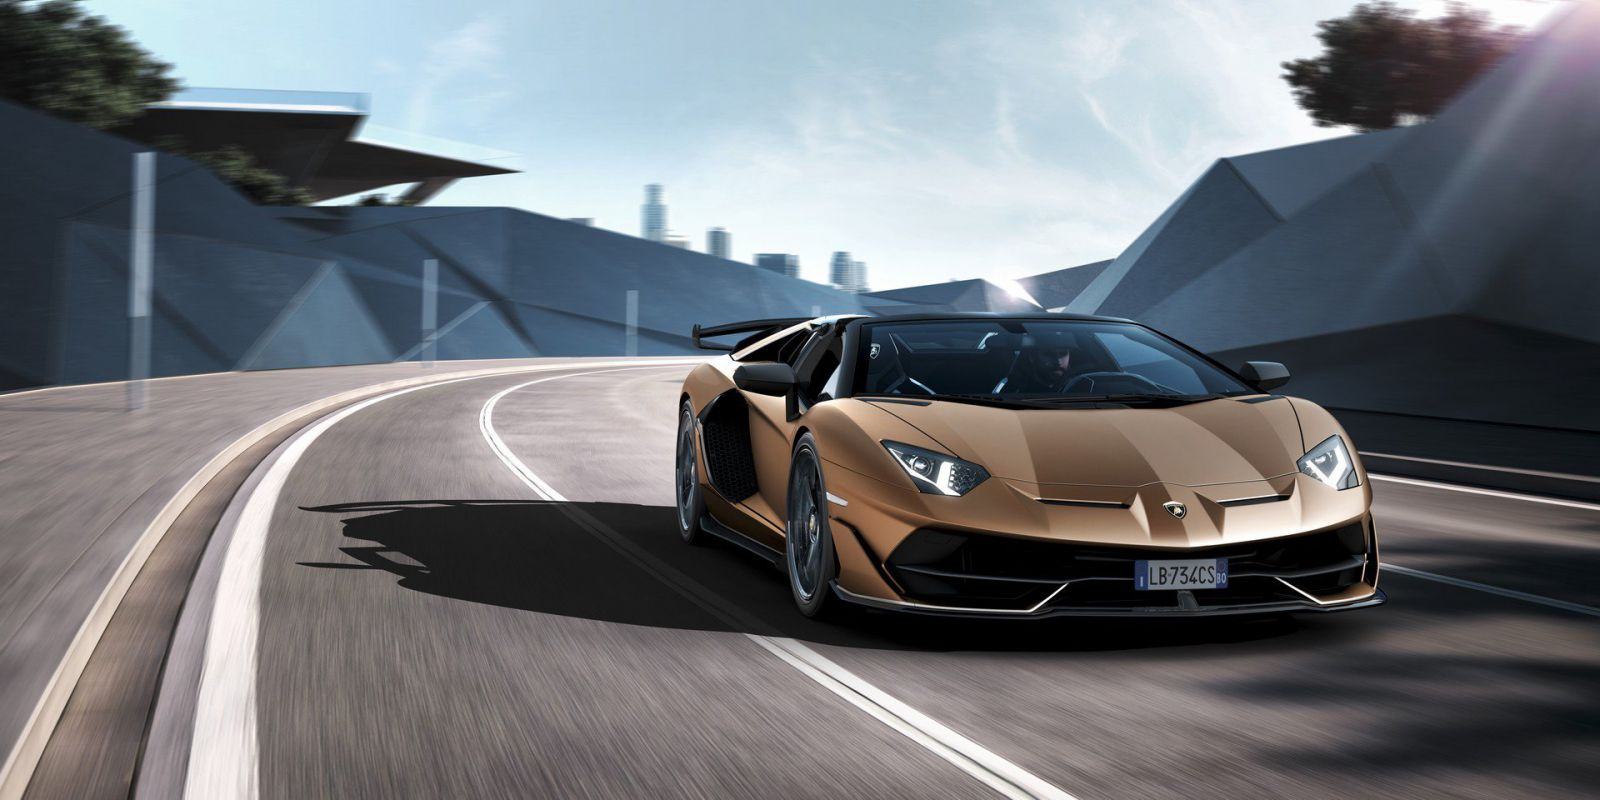 Ảnh đẹp siêu xe Lamborghini cực ngầu